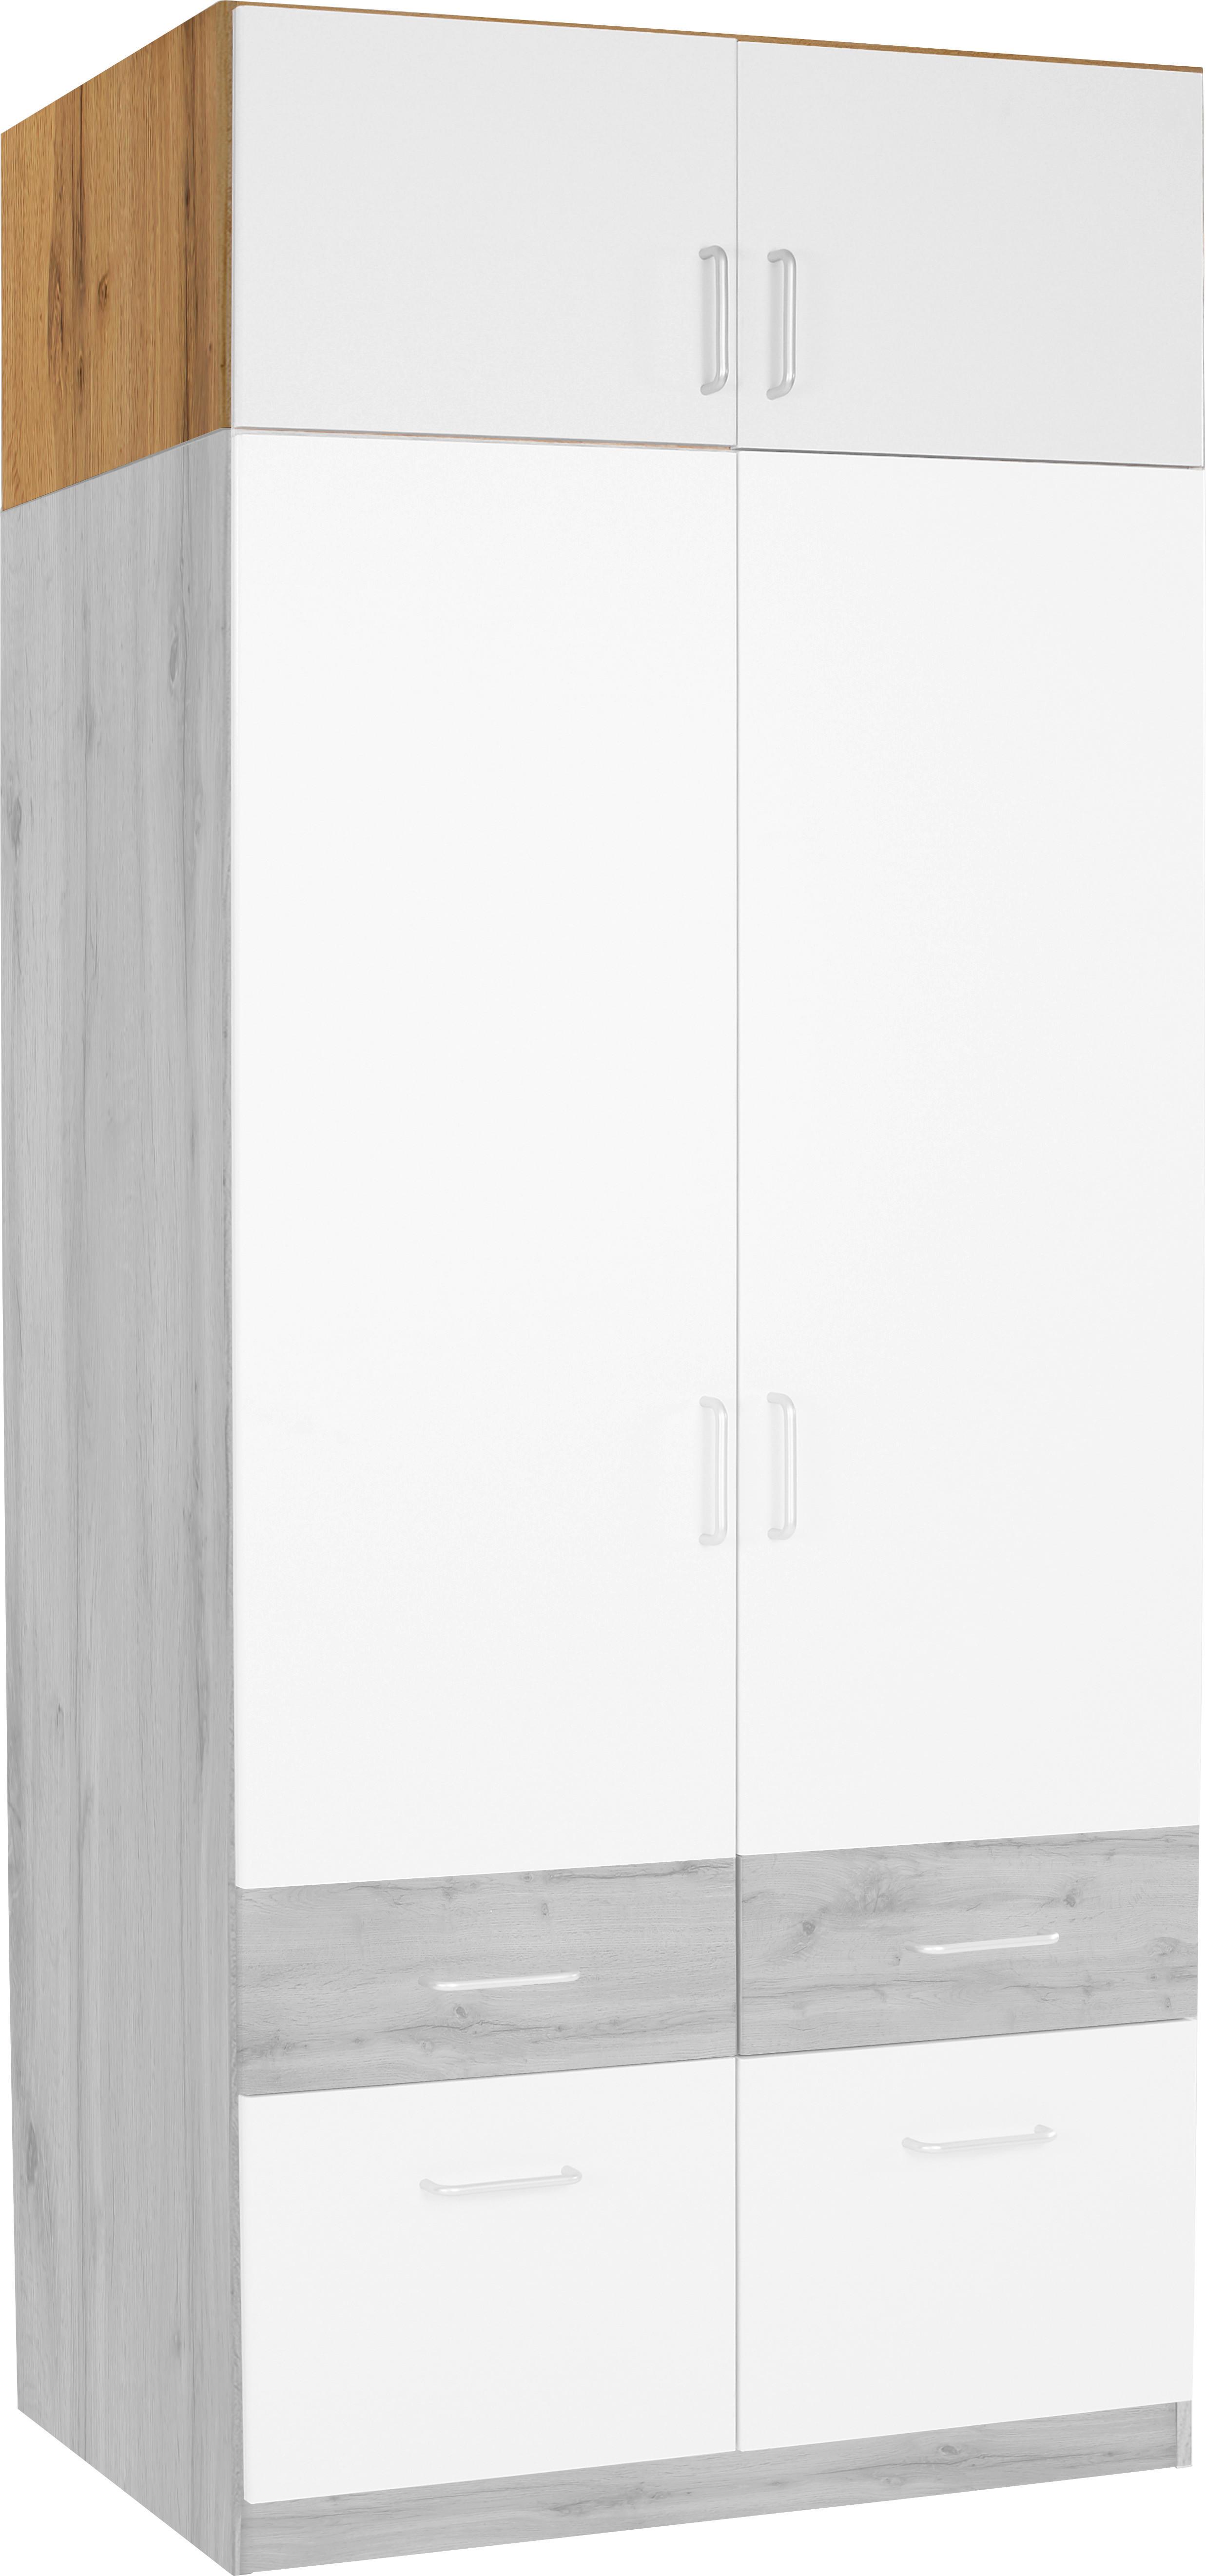 Dulap auxiliar superior Aalen Extra - alb/culoare lemn stejar, Konventionell, material pe bază de lemn (91/39/54cm)